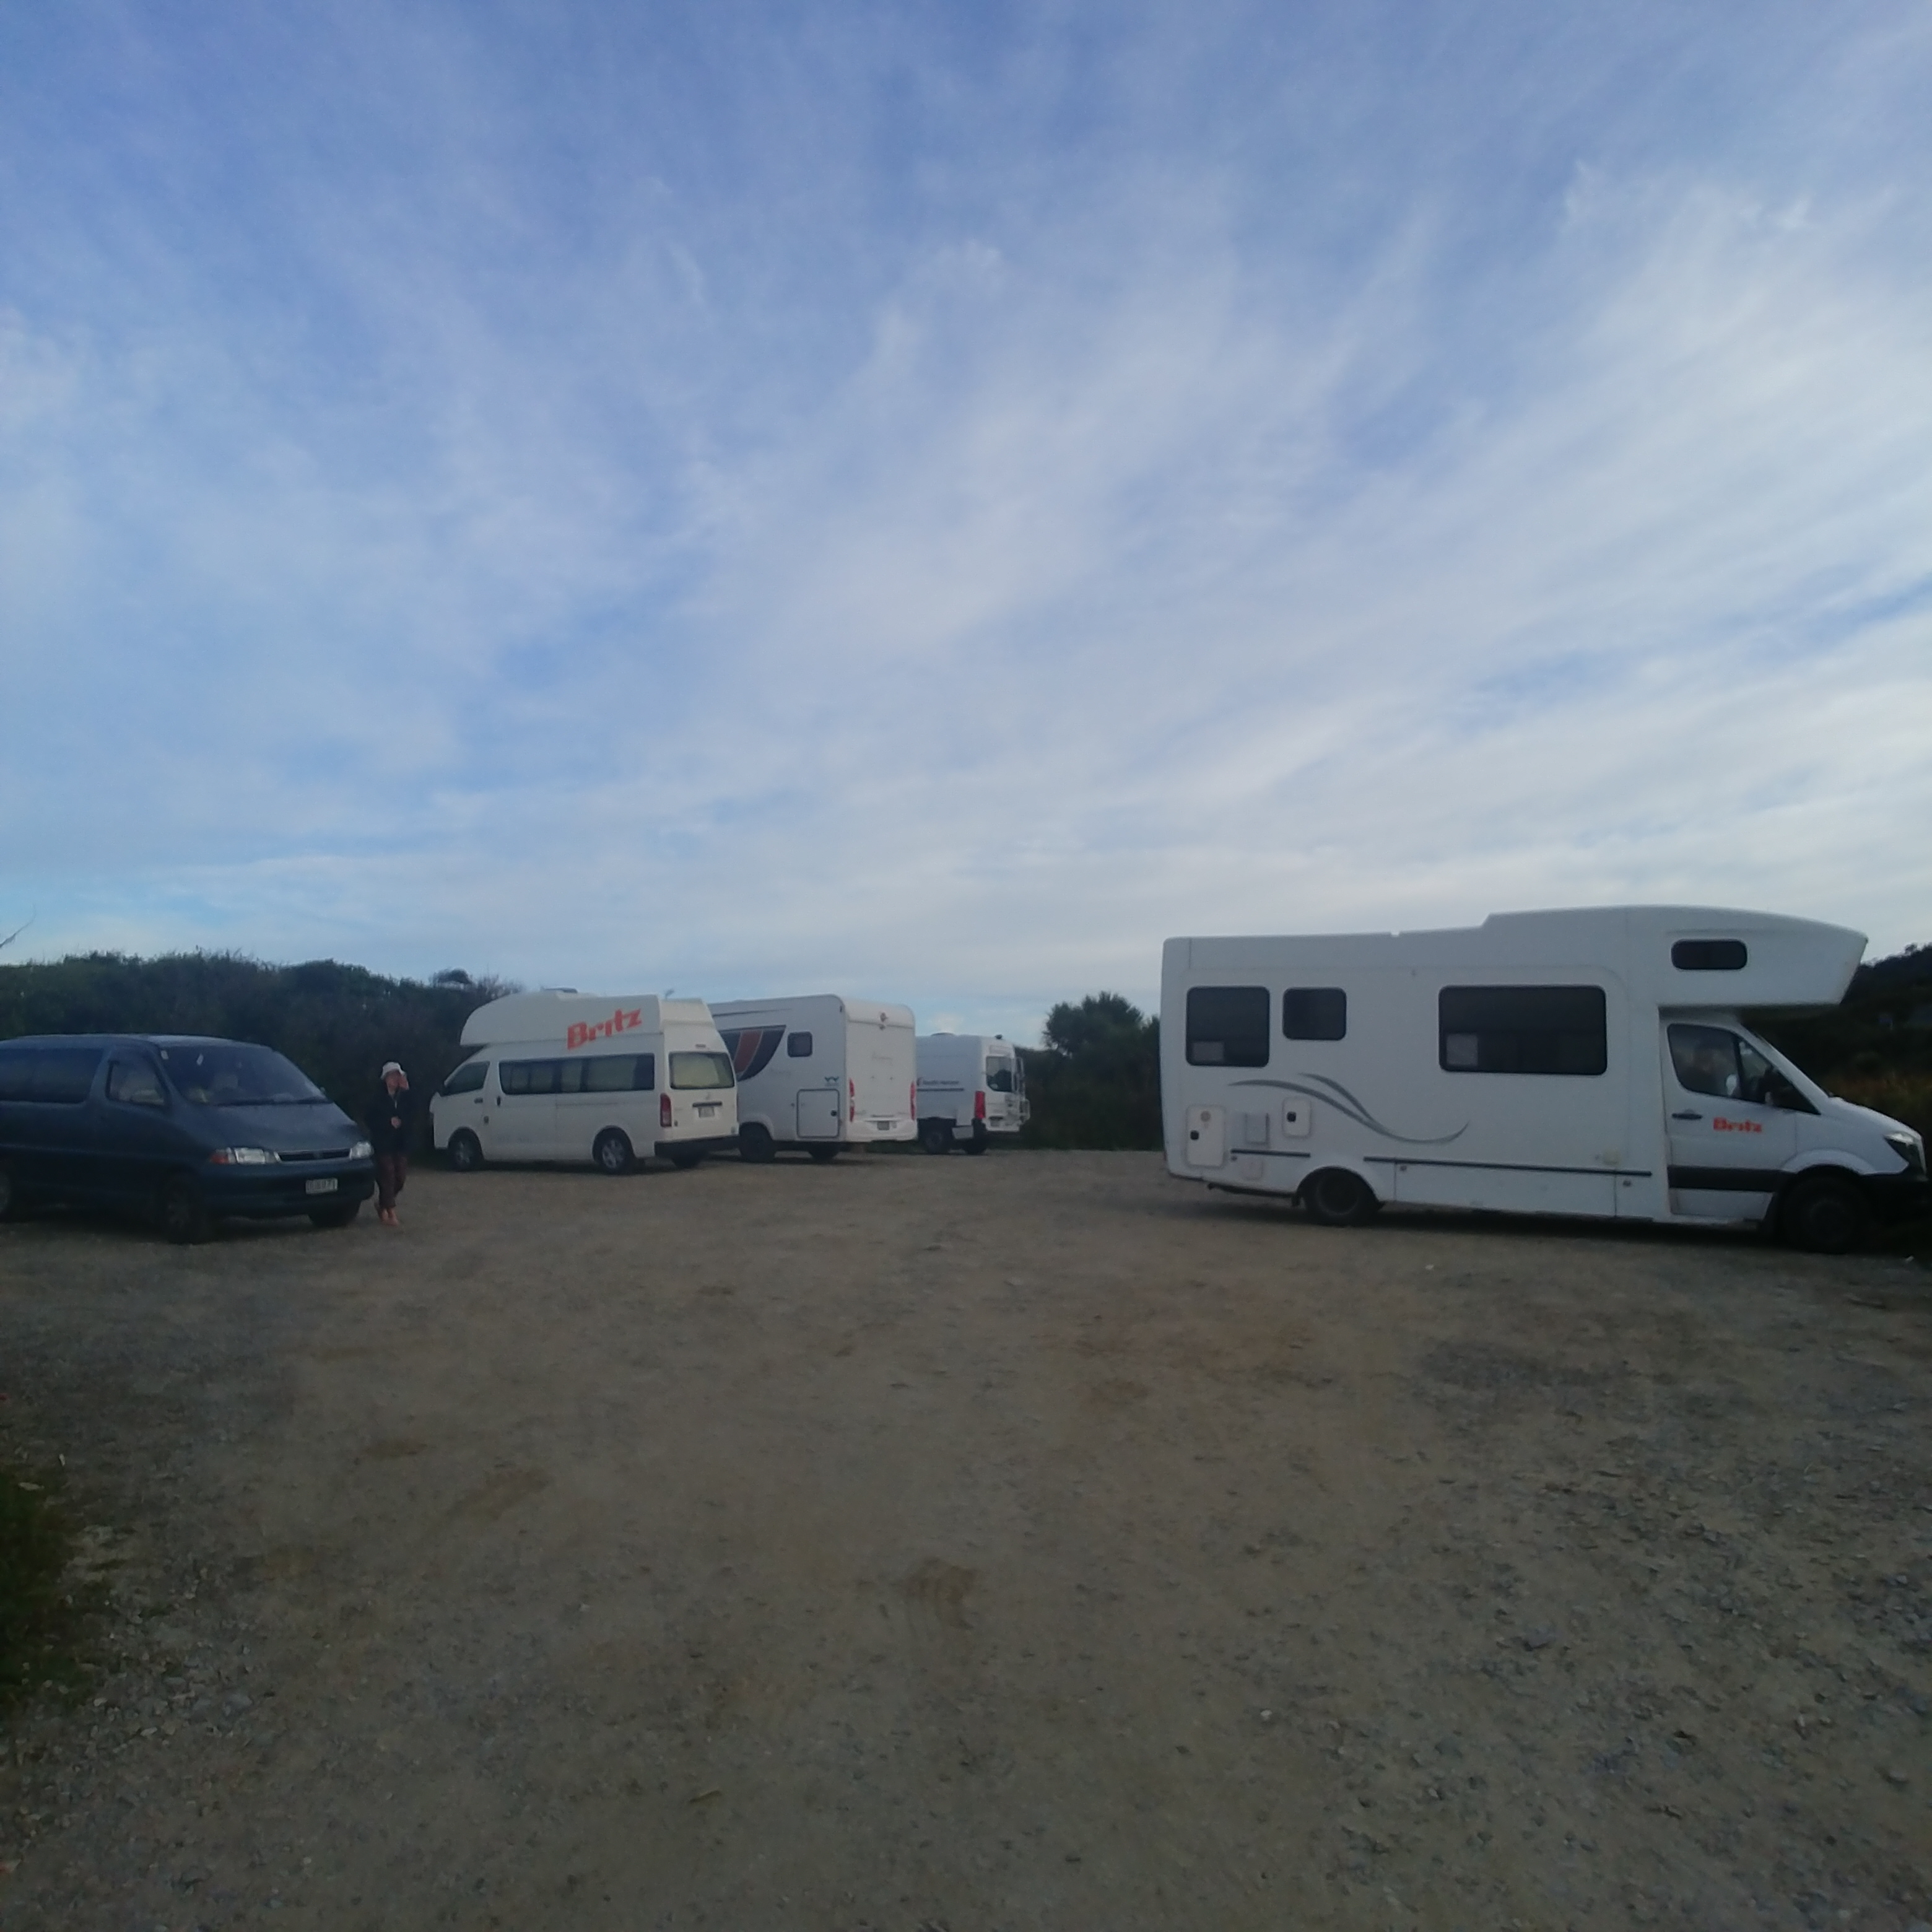 뉴질랜드 남섬 무료캠핑장 McMillan Road Freedom Camping Area (Certified Self-contained Vehicle Only)